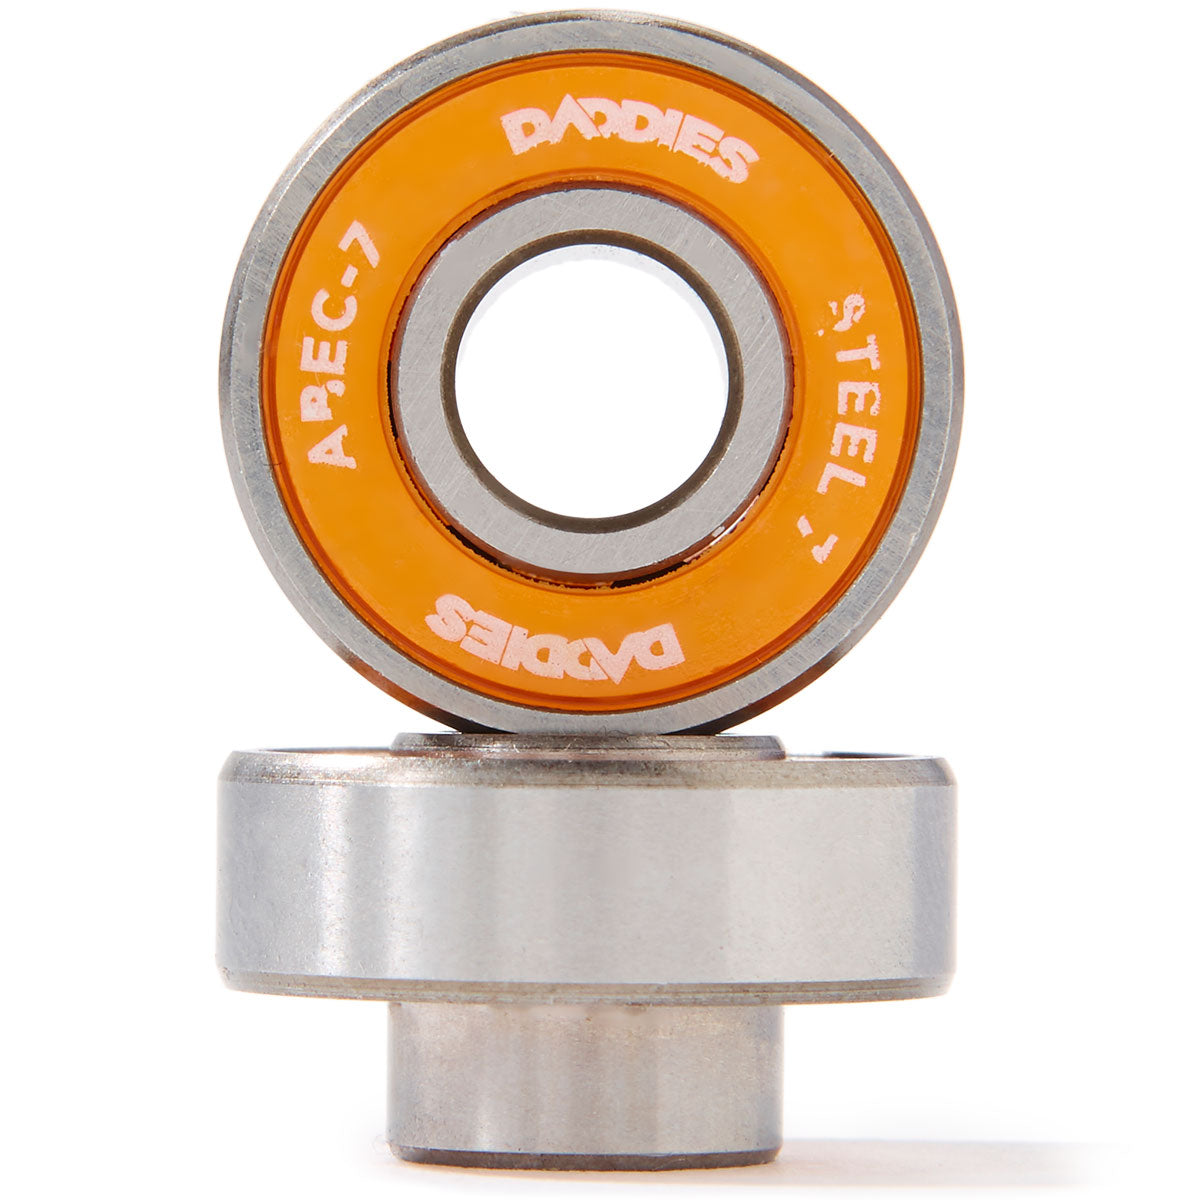 Daddies Steel Built In Skateboard Bearings - Orange image 1